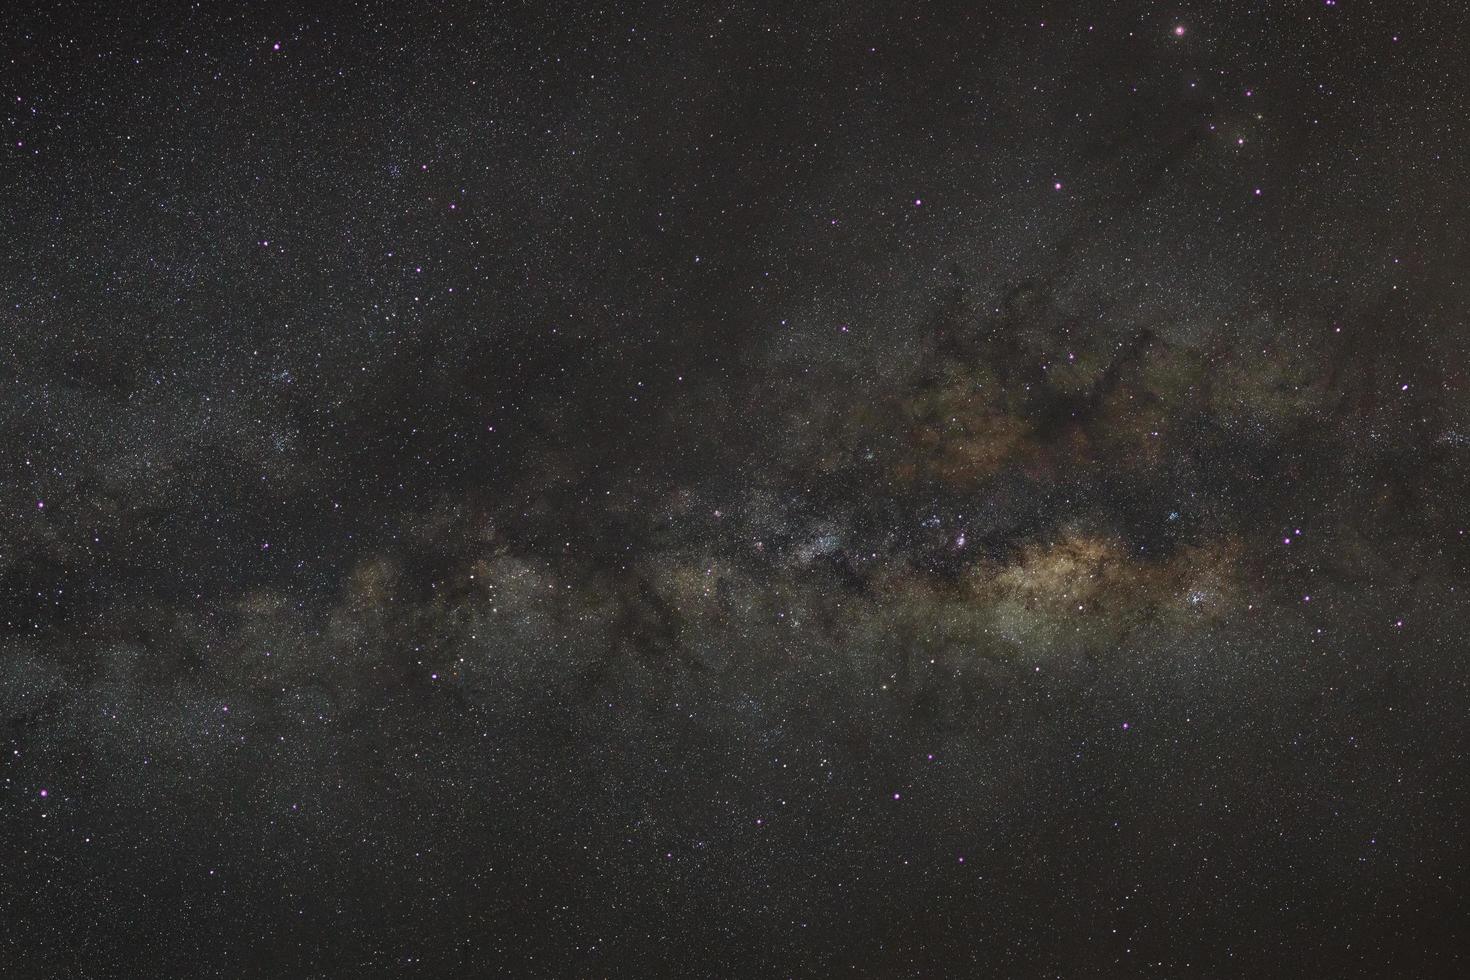 cielo nocturno estrellado, galaxia vía láctea con estrellas y polvo espacial en el universo, fotografía de larga exposición, con grano. foto